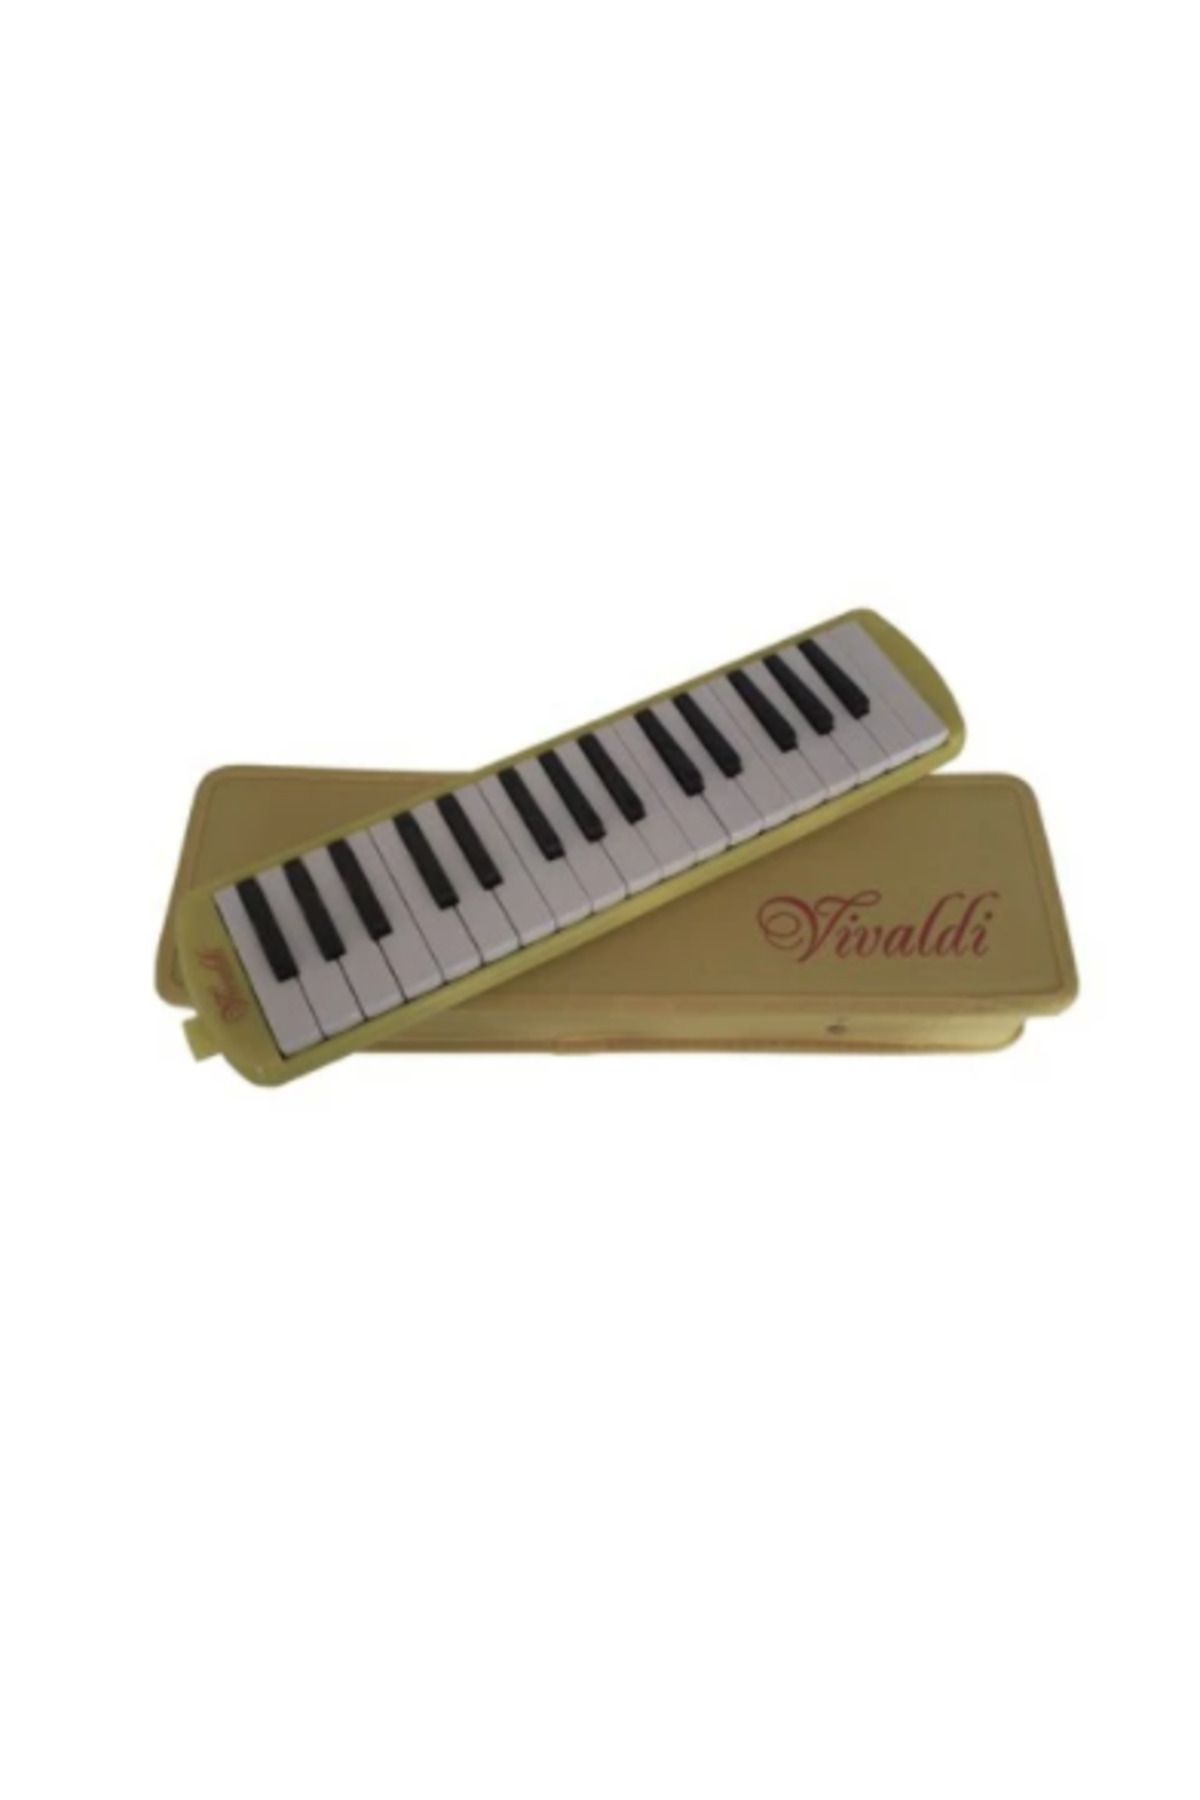 Vivaldi Mp-110yw Melodika Sarı 32 Tuş